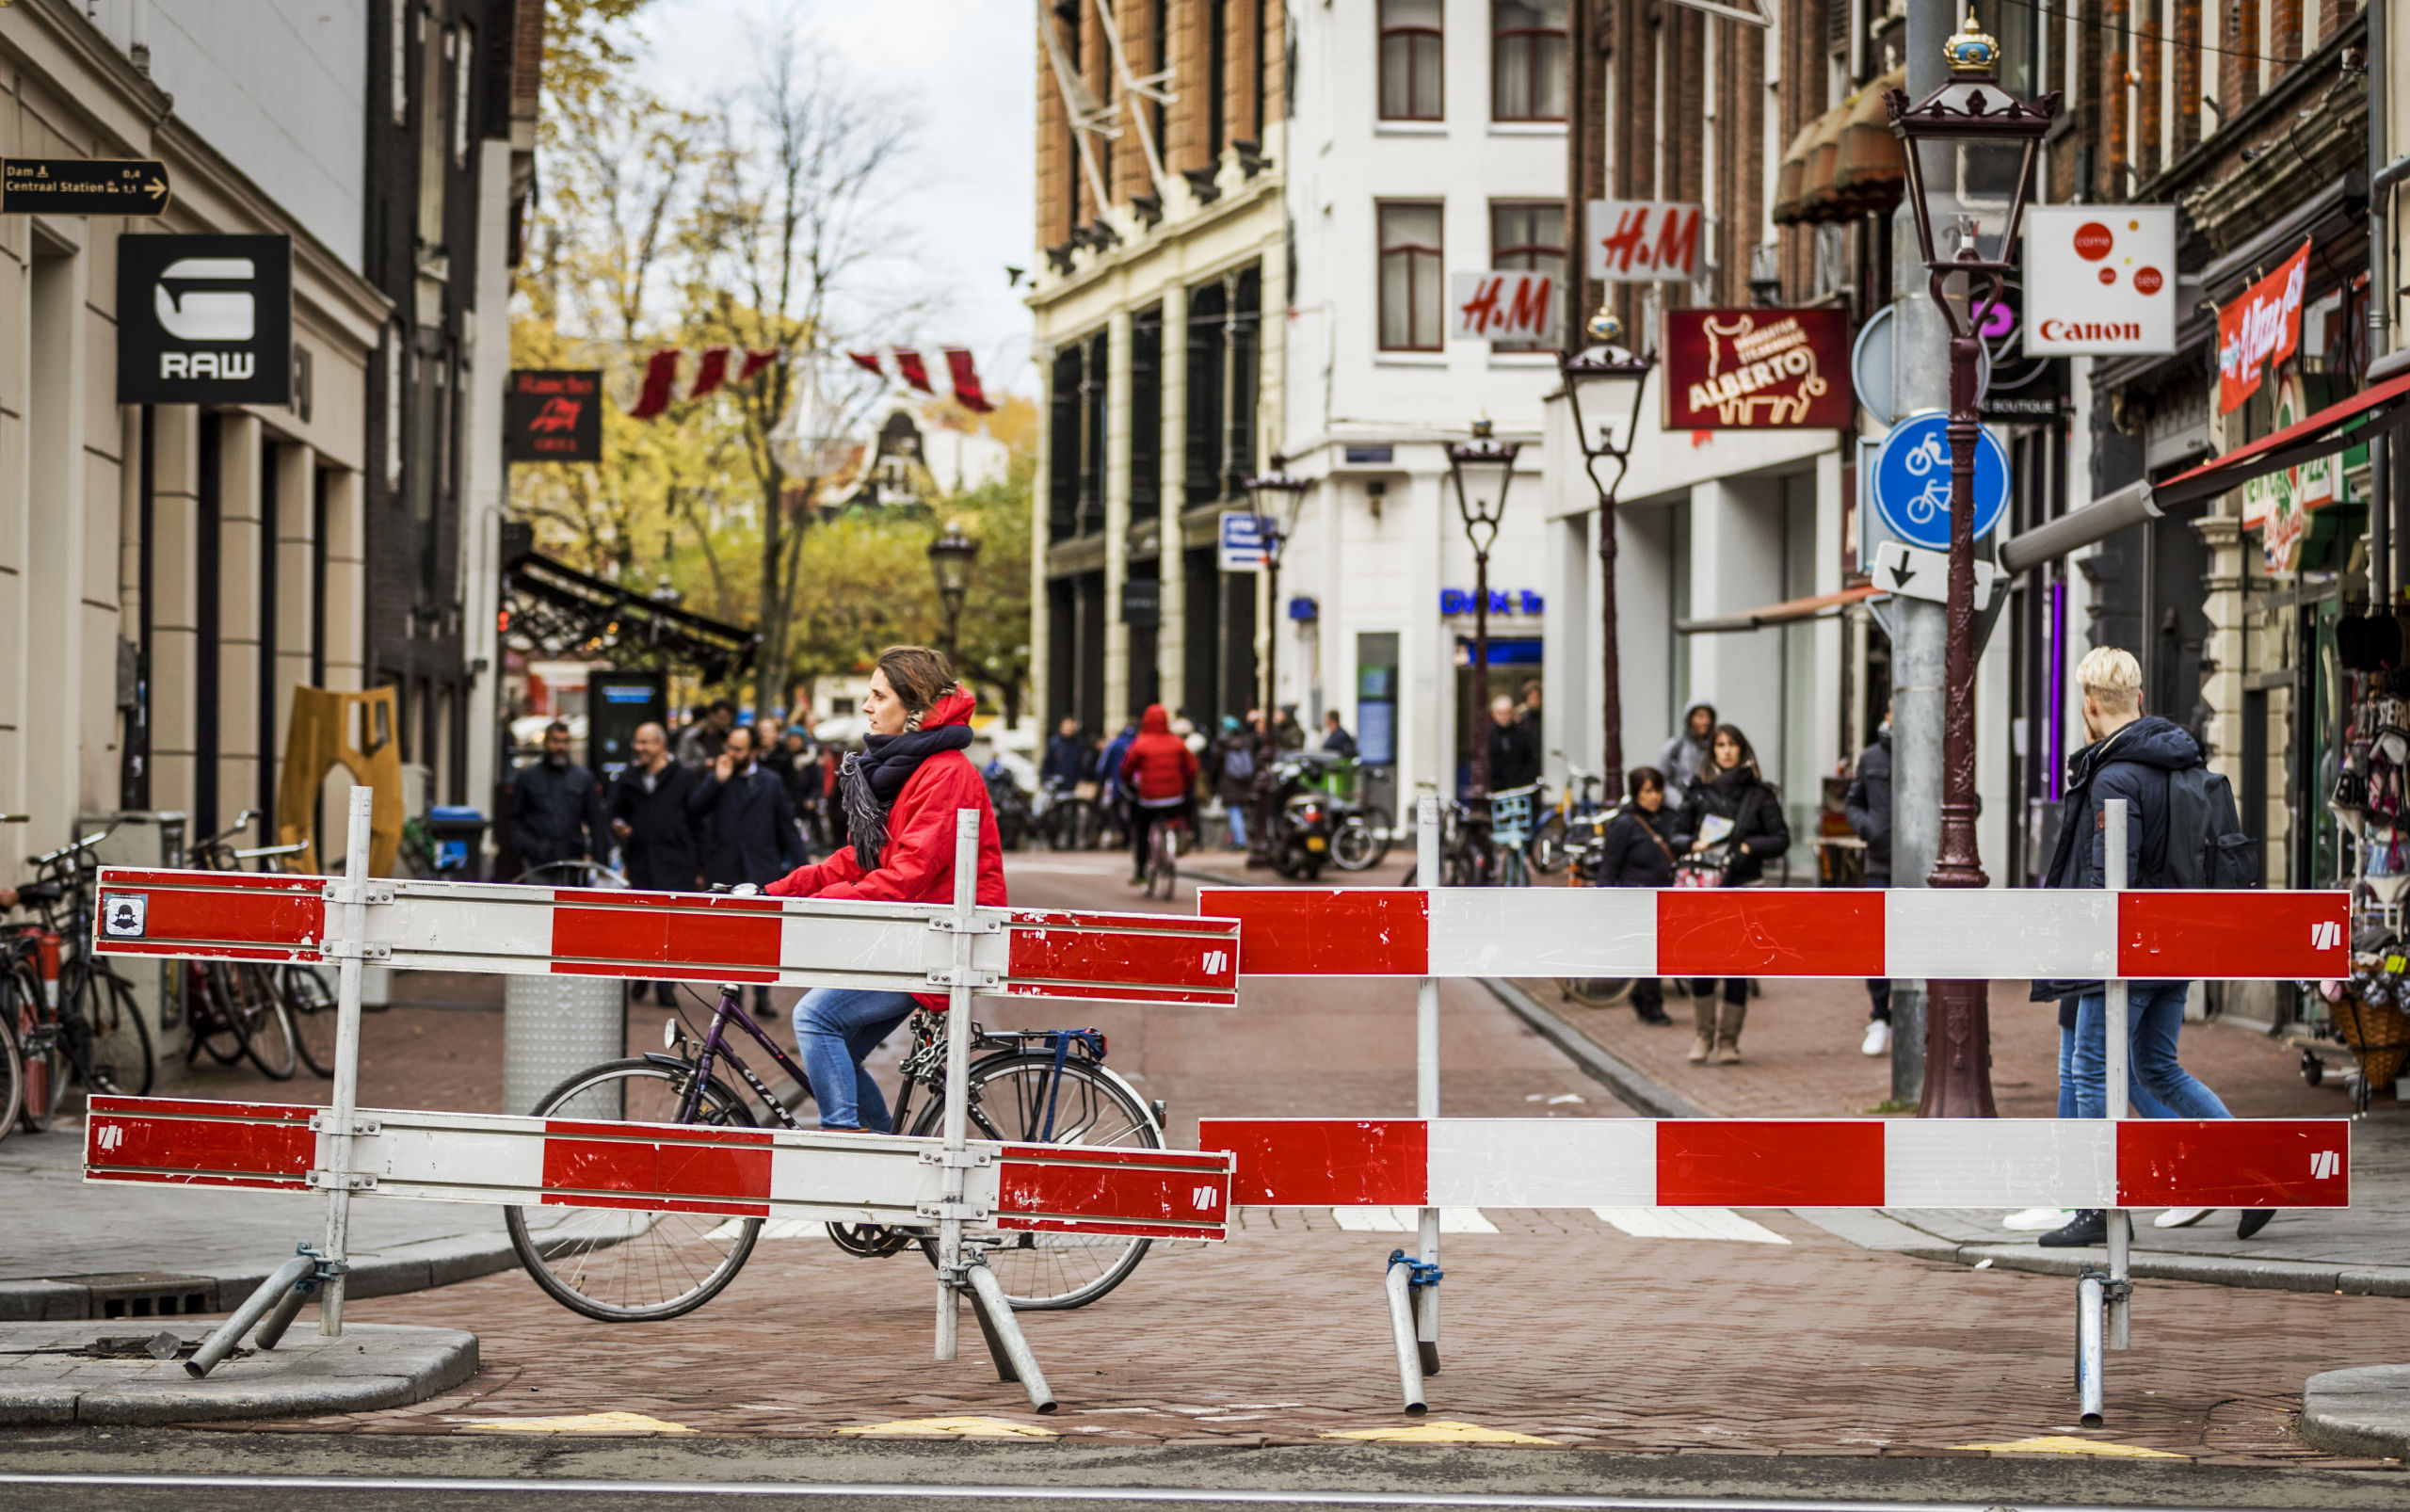 2016-11-18 11:51:52 AMSTERDAM - Werkzaamheden op het Rokin in het centrum van Amsterdam. In de hoofdstad wordt momenteel op veel plekken aan de weg gewerkt en gebouwd. ANP REMKO DE WAAL